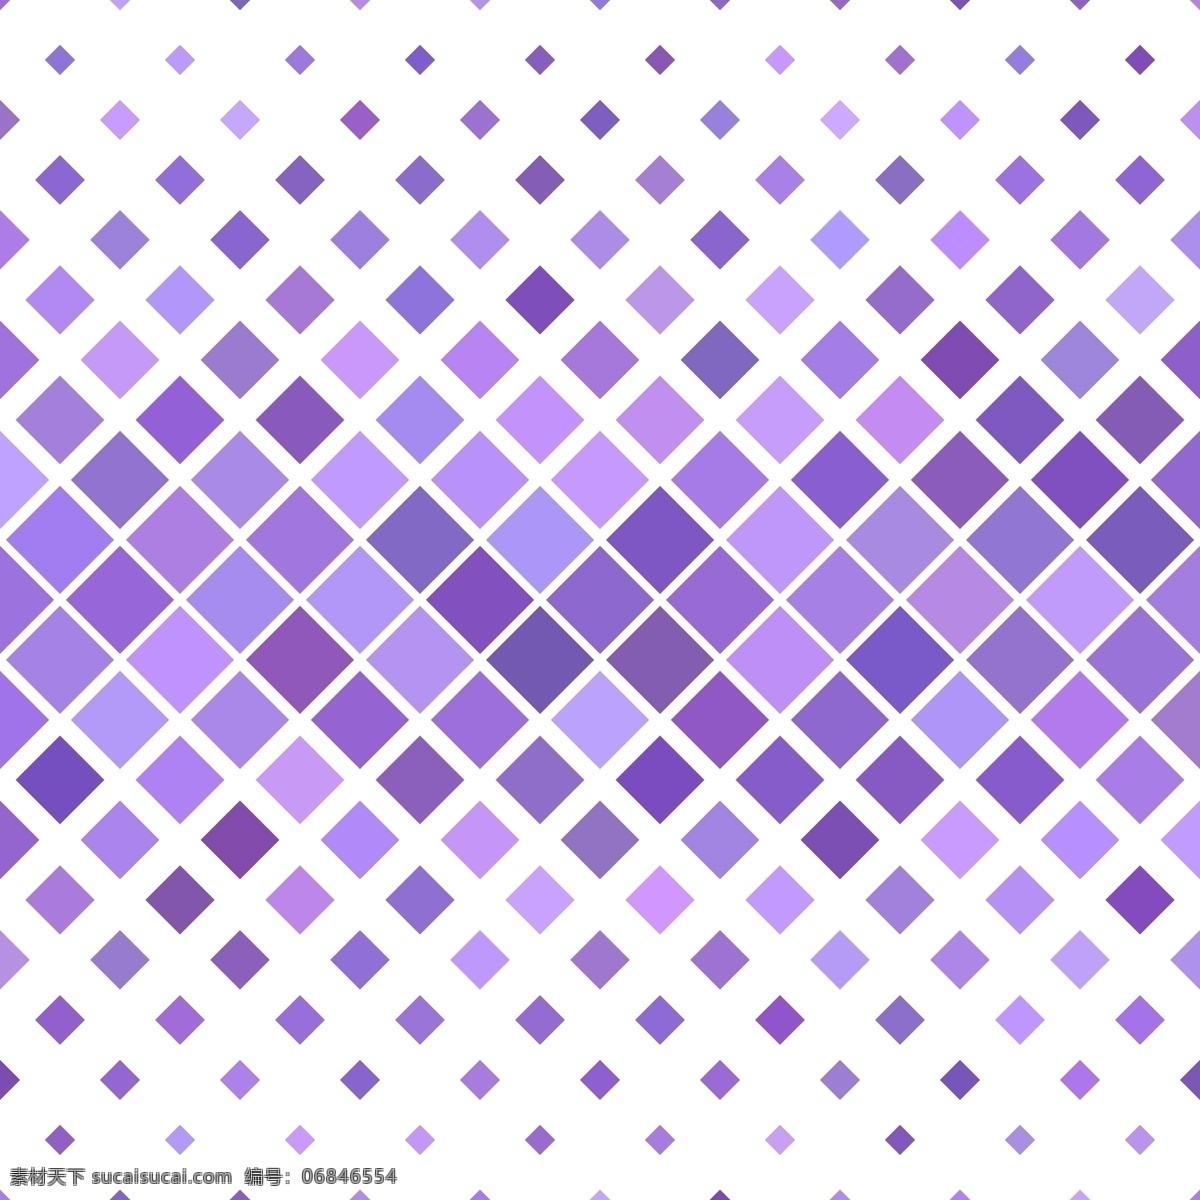 紫色 菱形 装饰 图案 背景 紫色菱形 装饰图案 背景设计